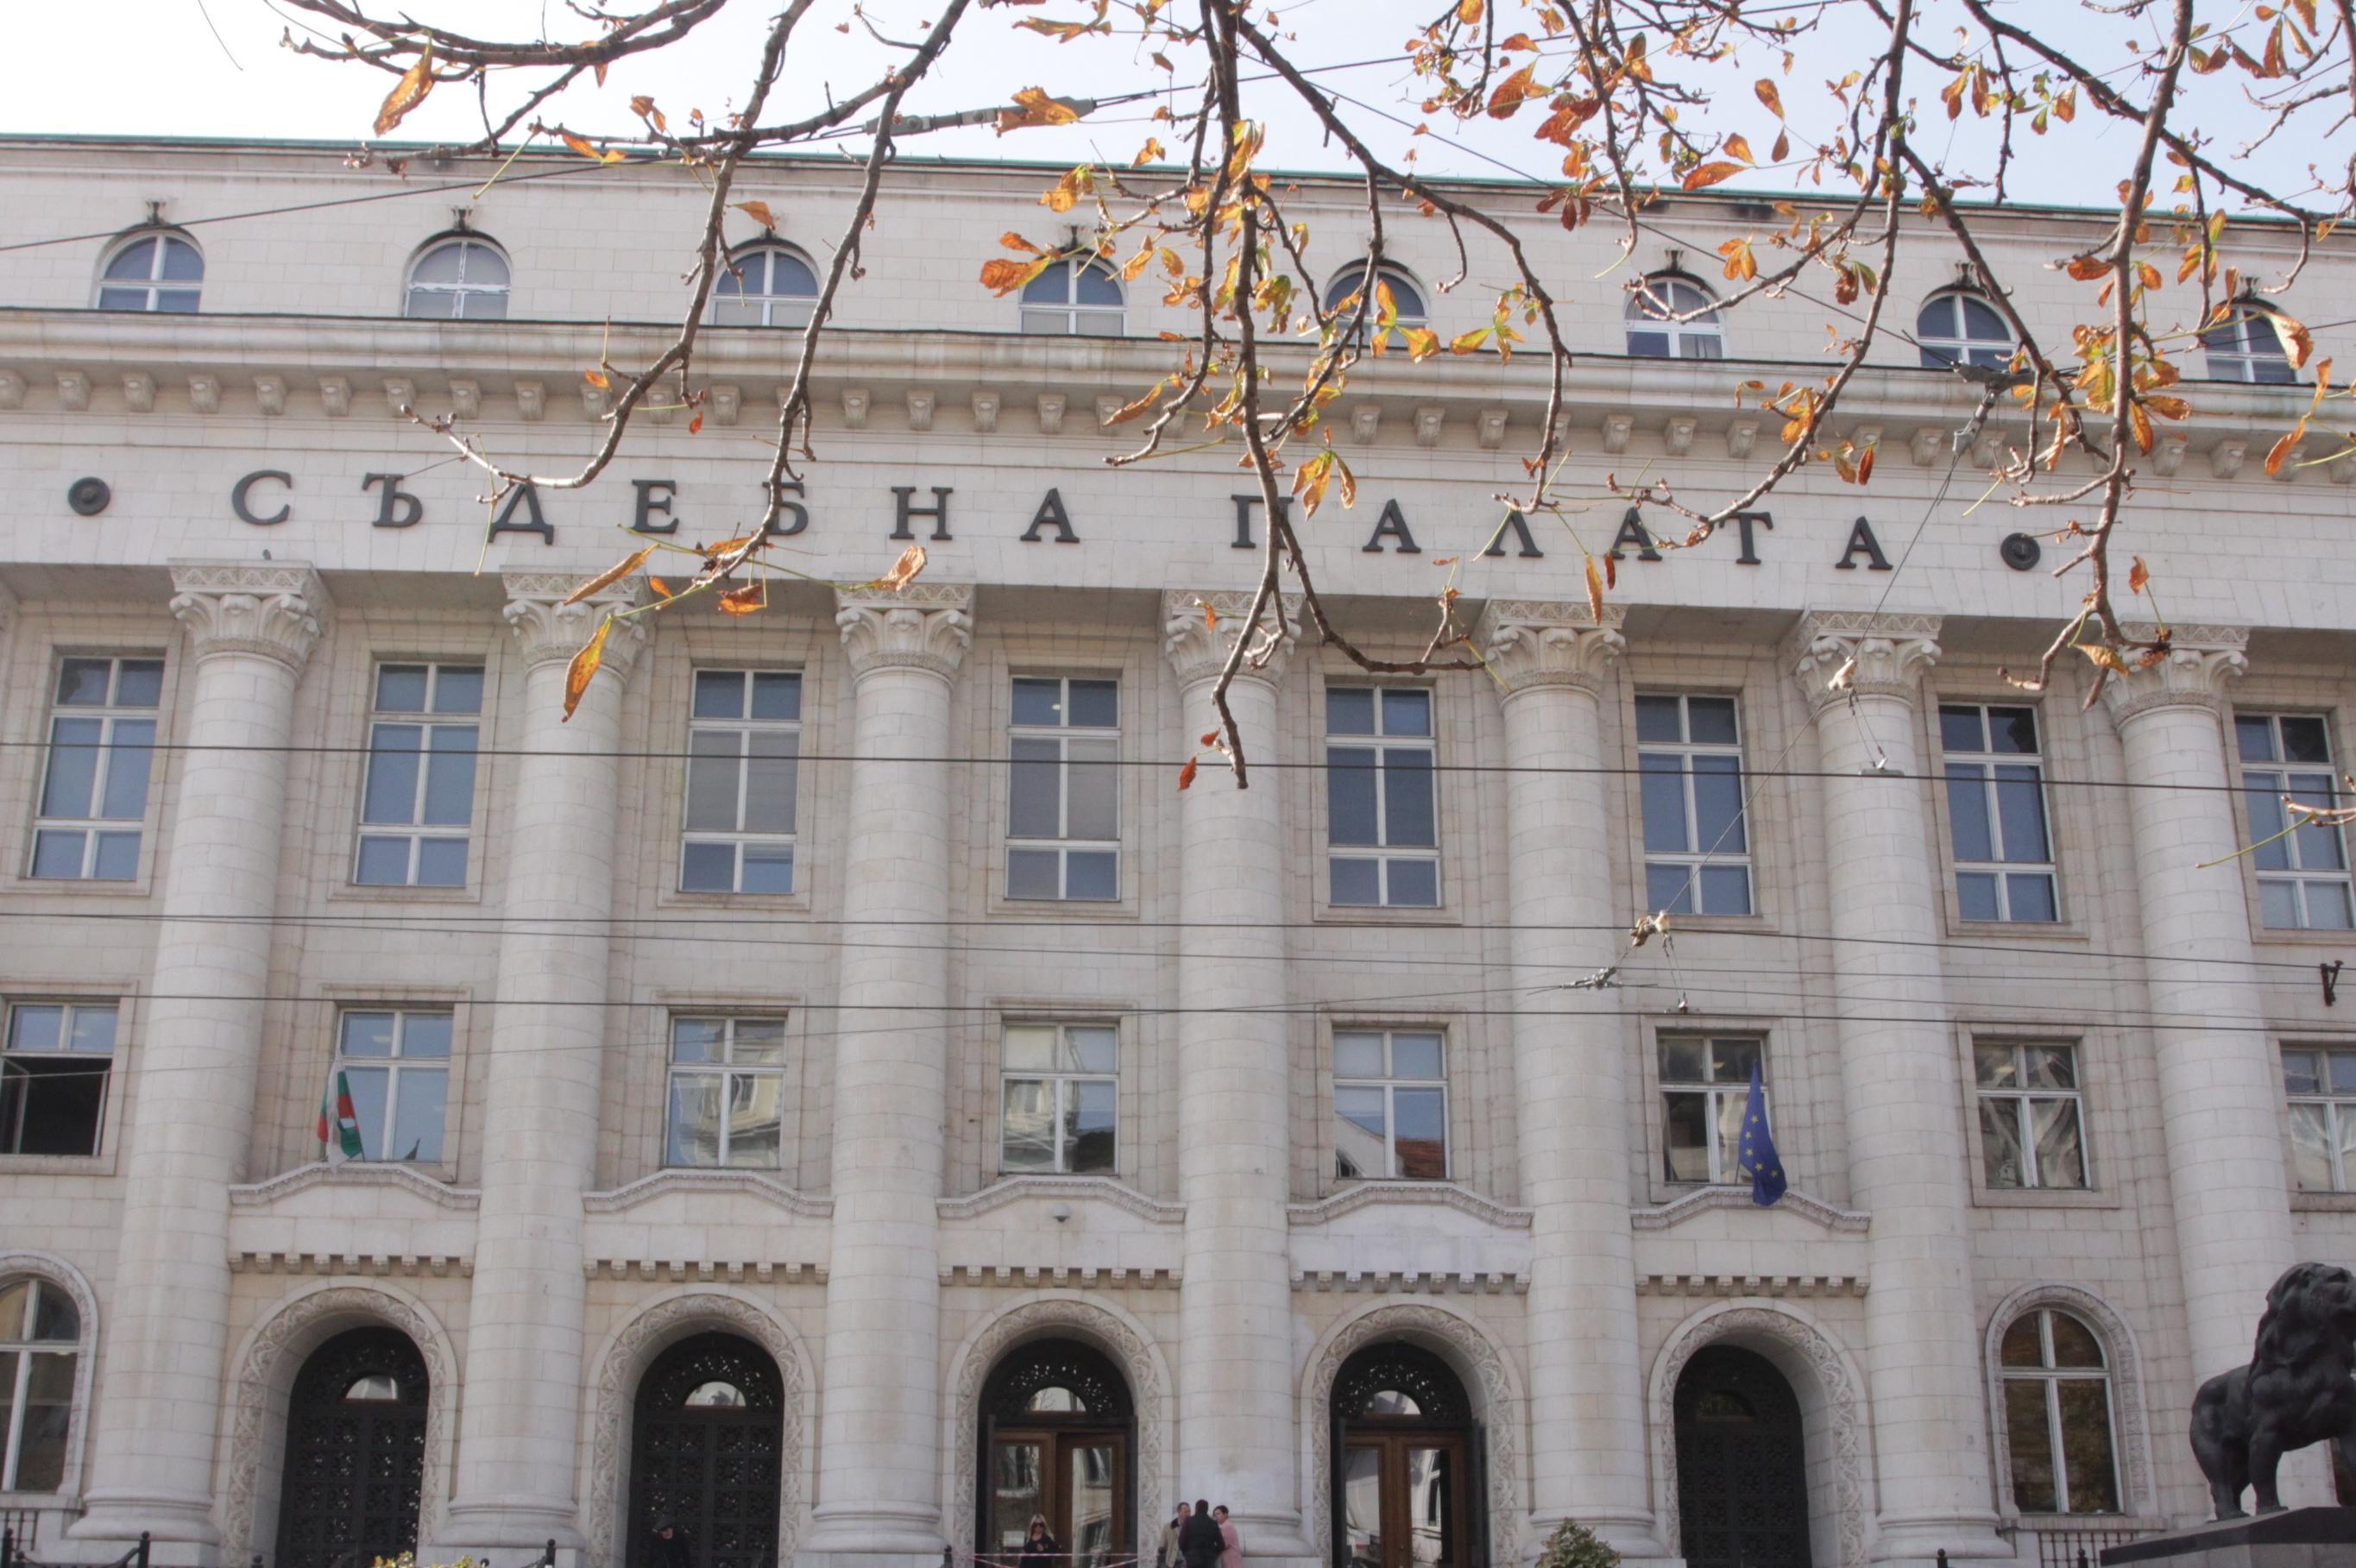 Предадоха на съд мъж, нанесъл средна телесна повреда в София